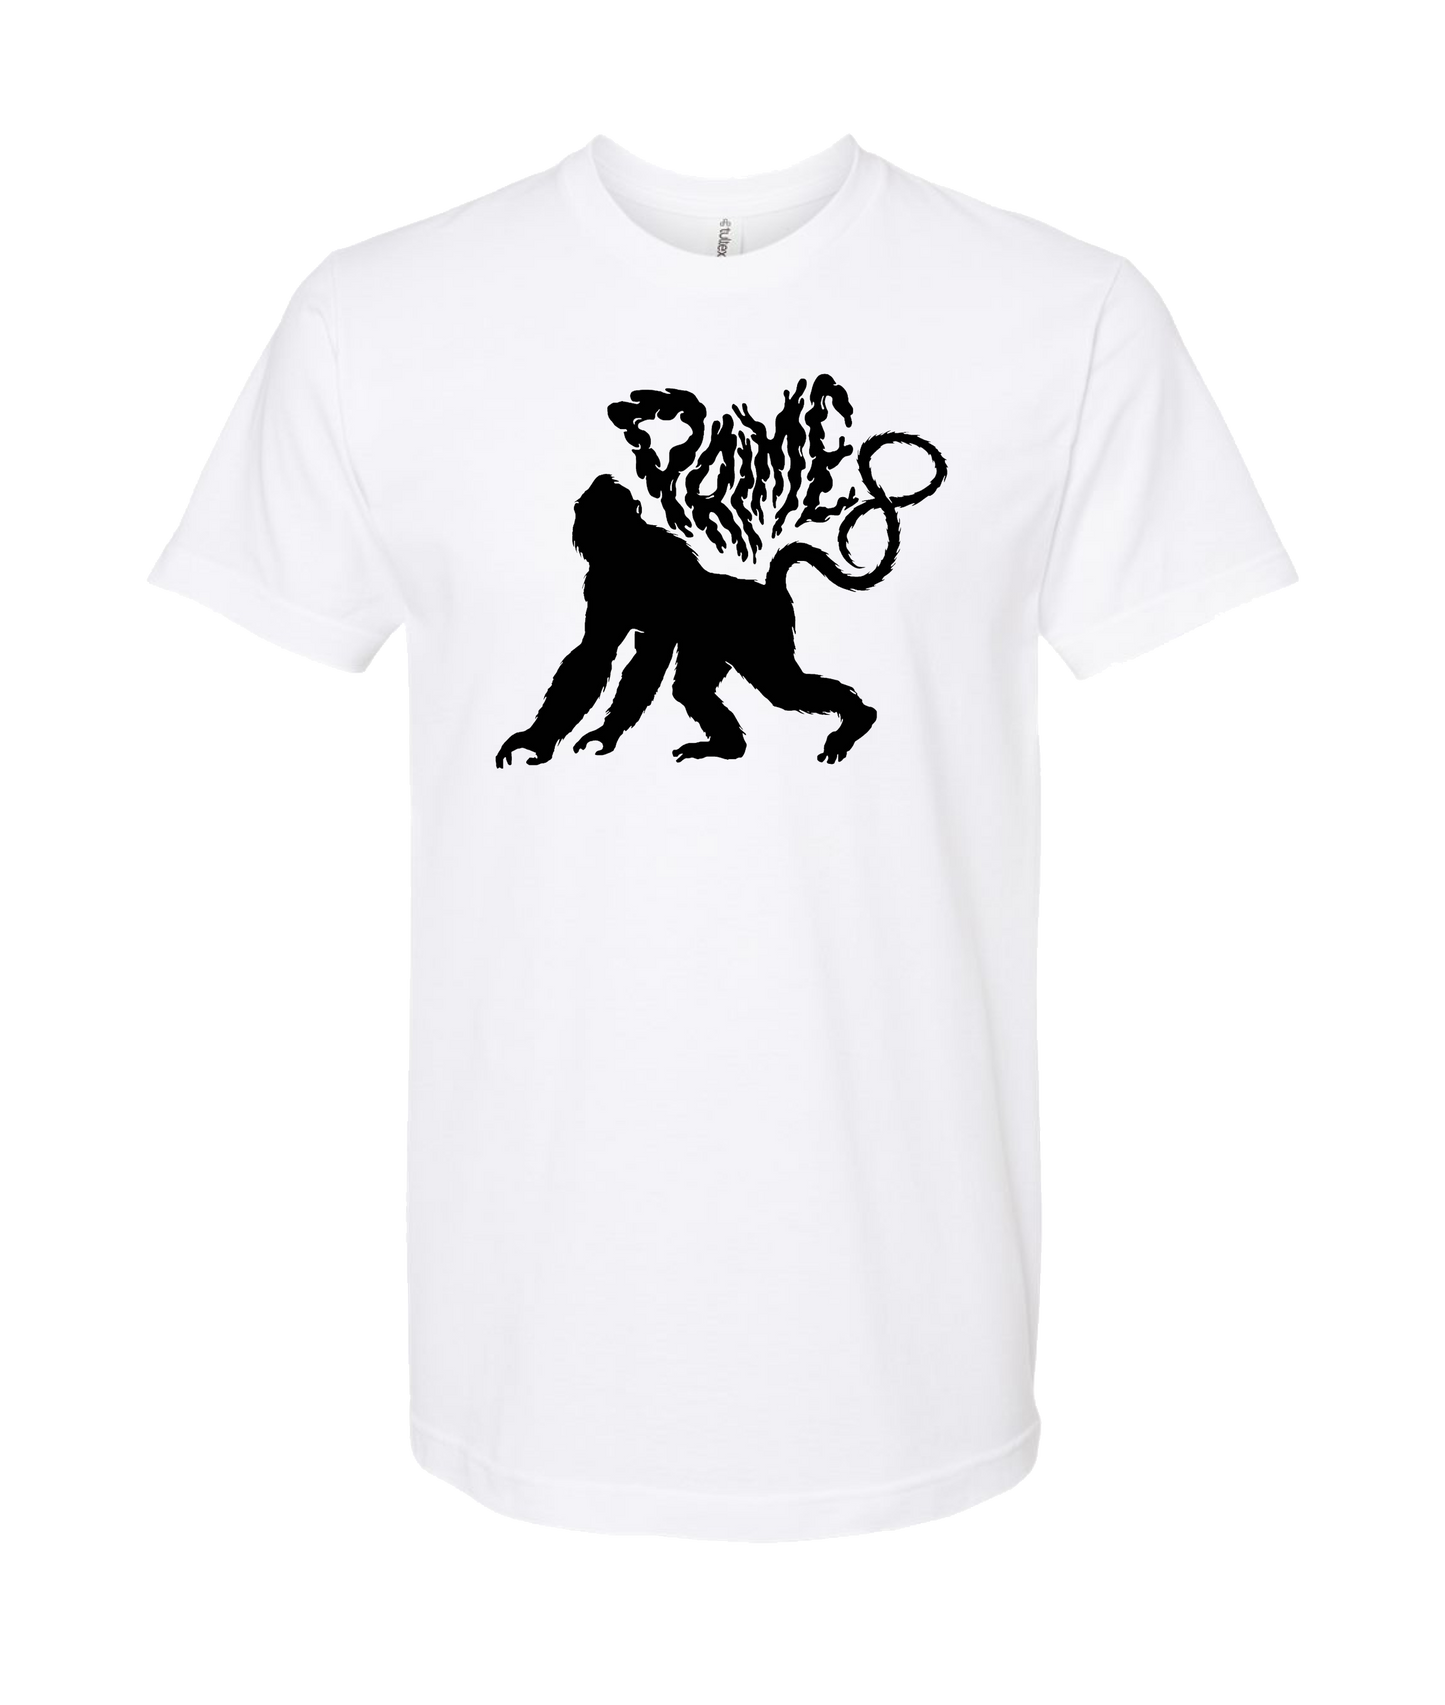 Prime 8 - Full Body Ape - White T-Shirt